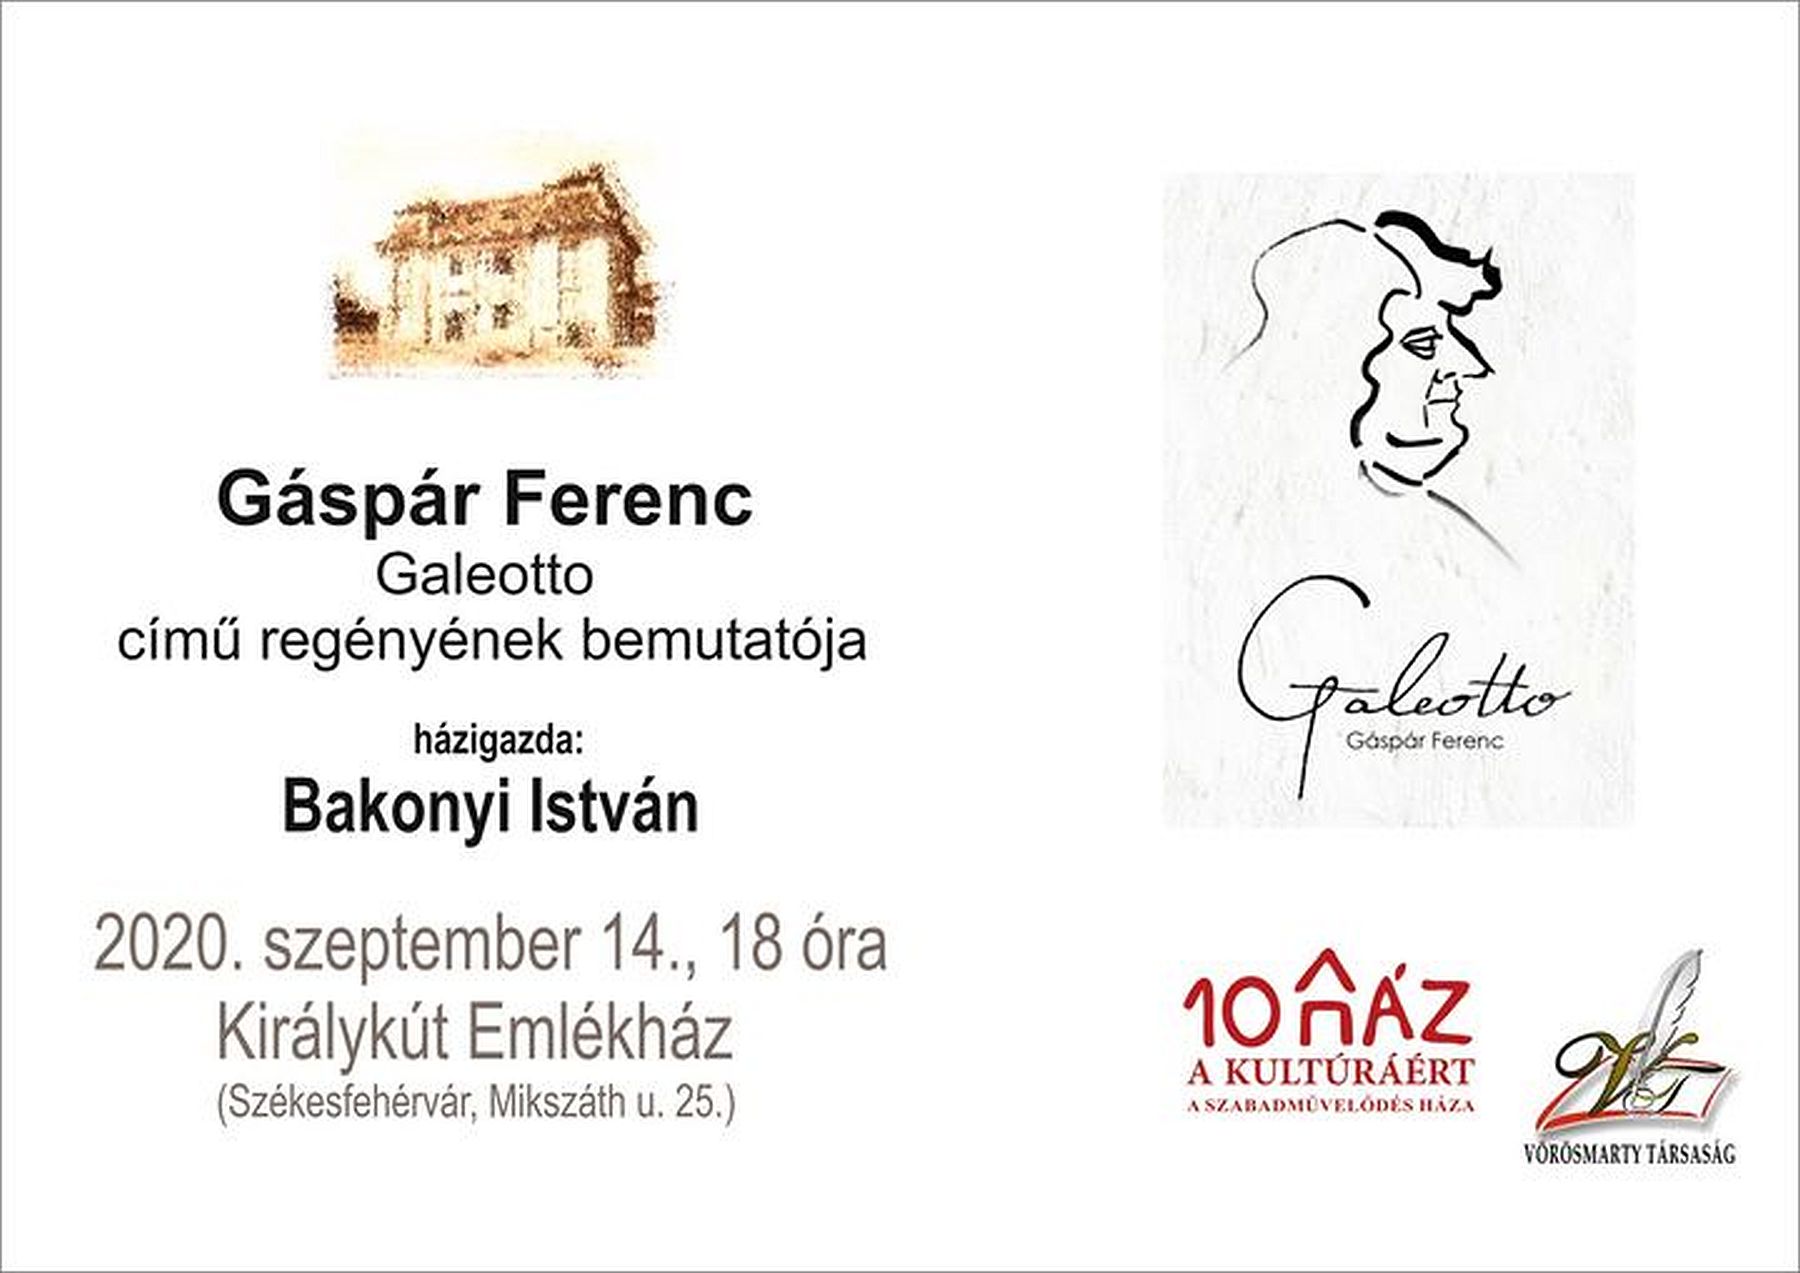 Gáspár Ferenc Galeotto című regényét mutatják be a Királykút Emlékházban hétfőn